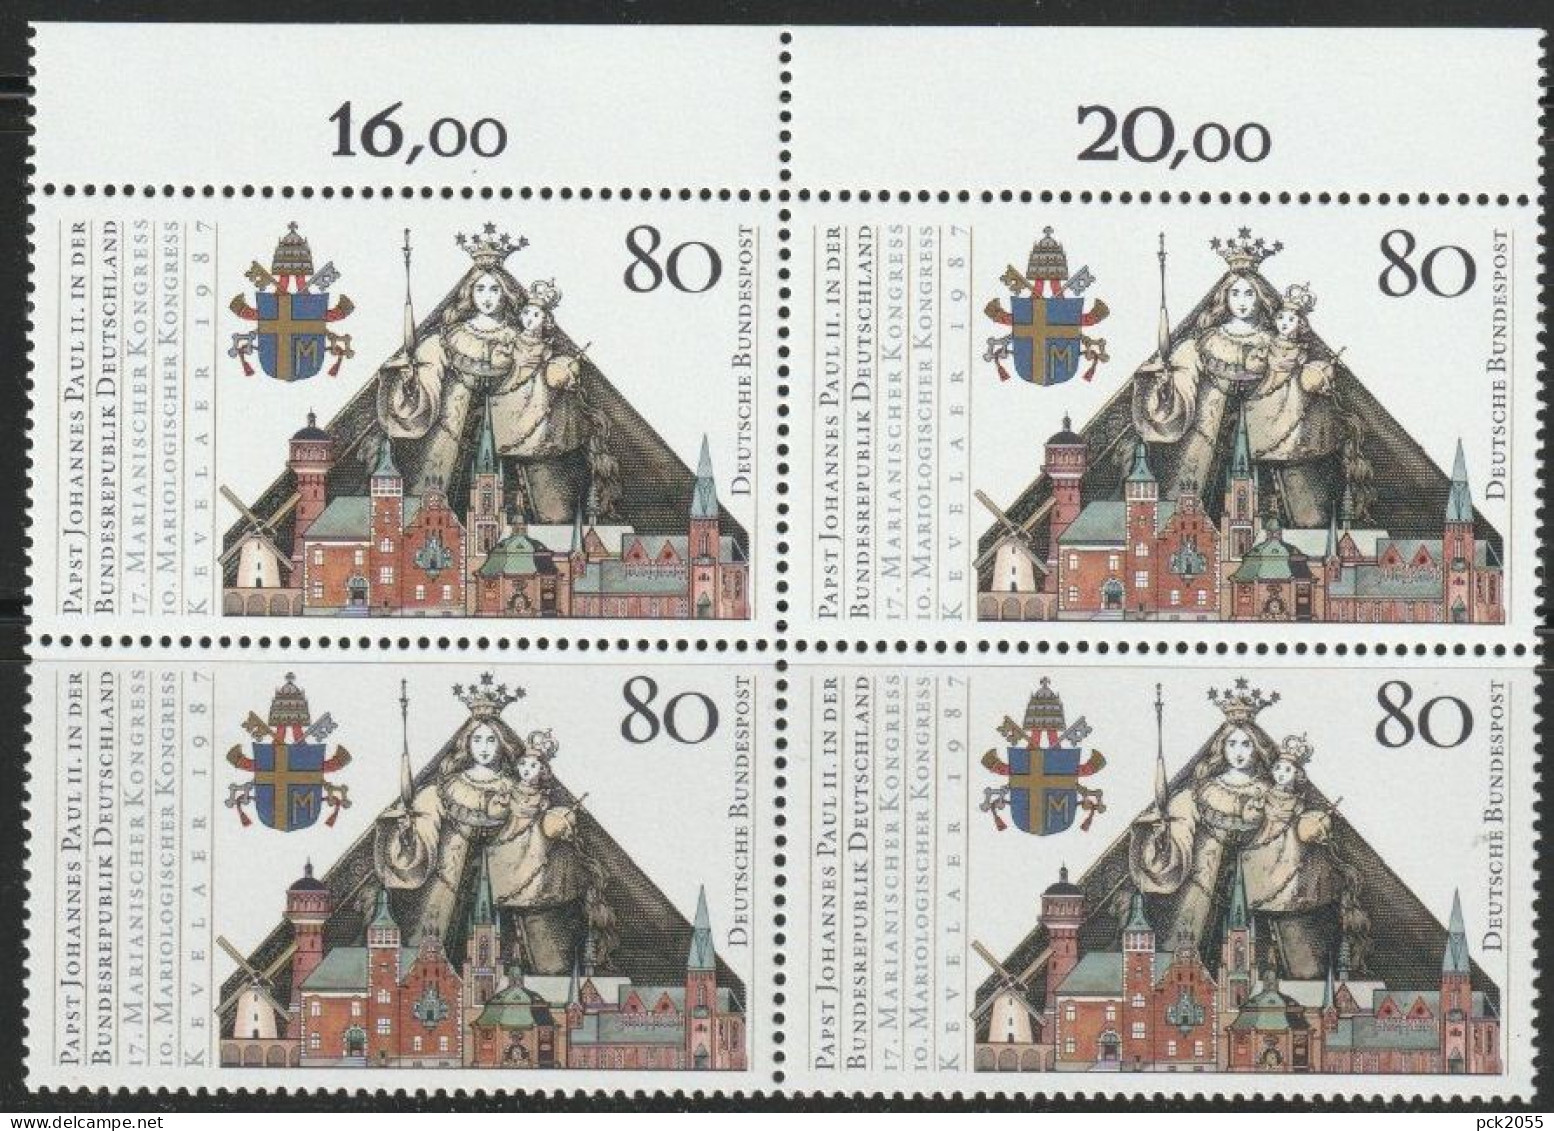 BRD 1987 MiNr.1320 4er Block ** Postfrisch Besuch Papst Johannes Paul II  ( 456 )günstige Versandkosten - Unused Stamps